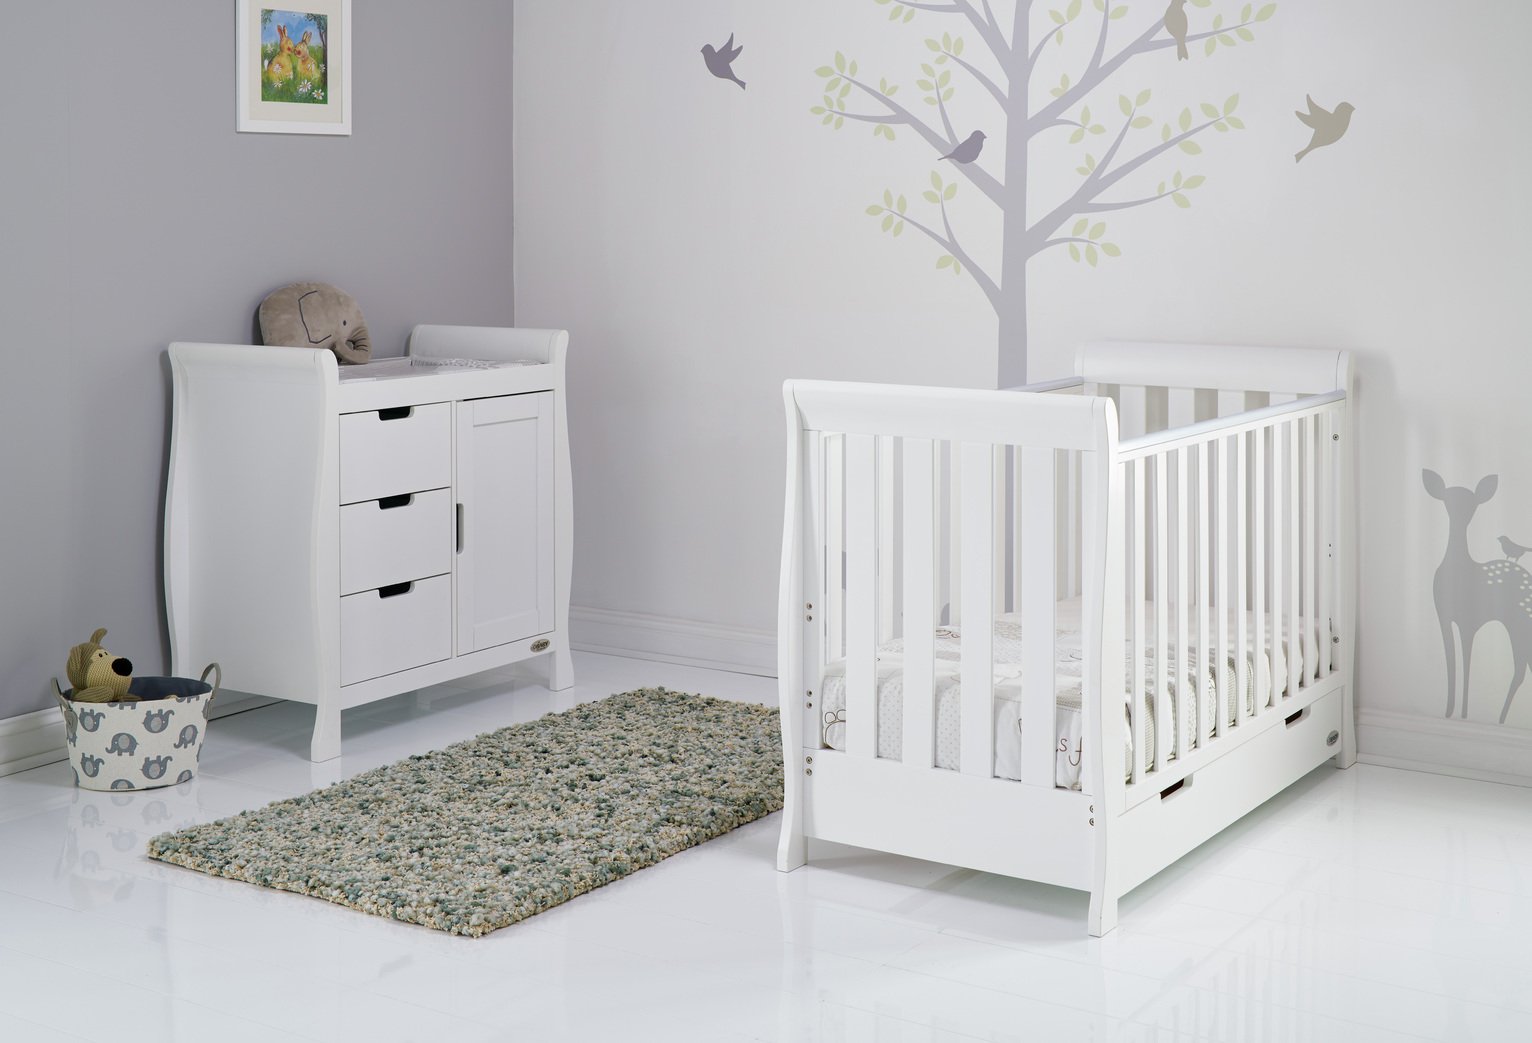 Obaby Stamford Mini Sleigh 2 Piece Nursery Set - White